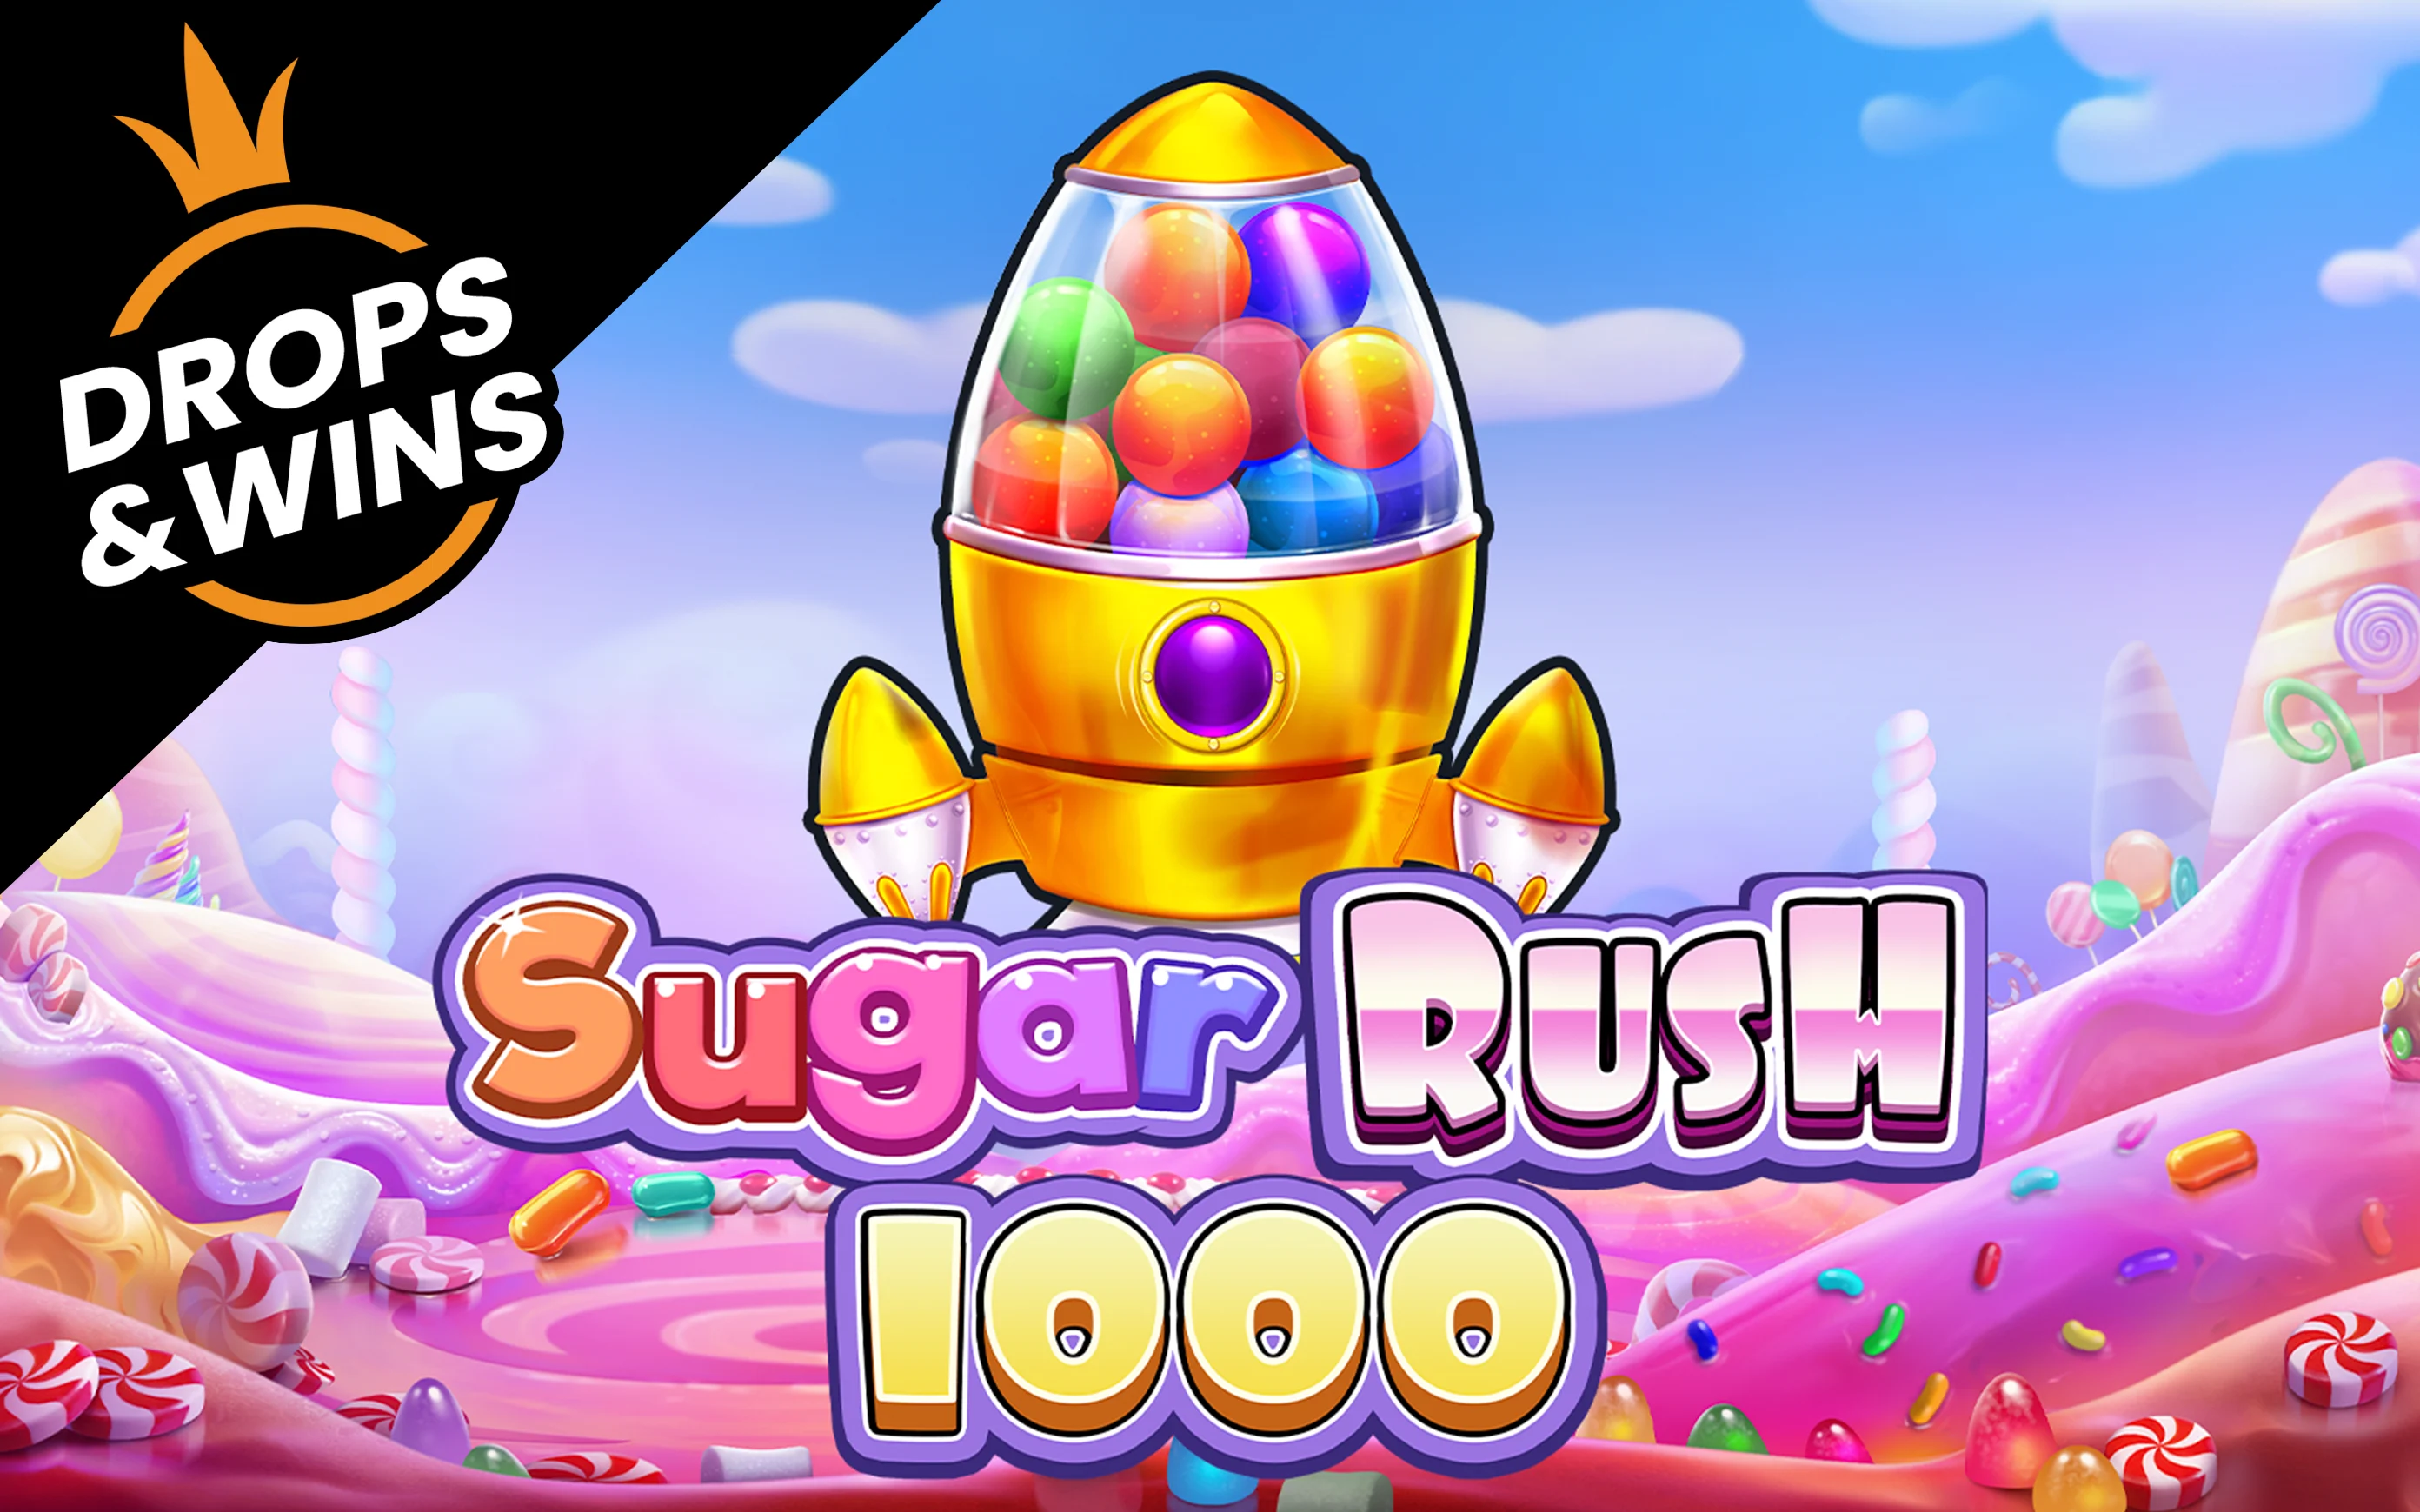 Играйте в Sugar Rush 1000 в онлайн-казино Starcasino.be